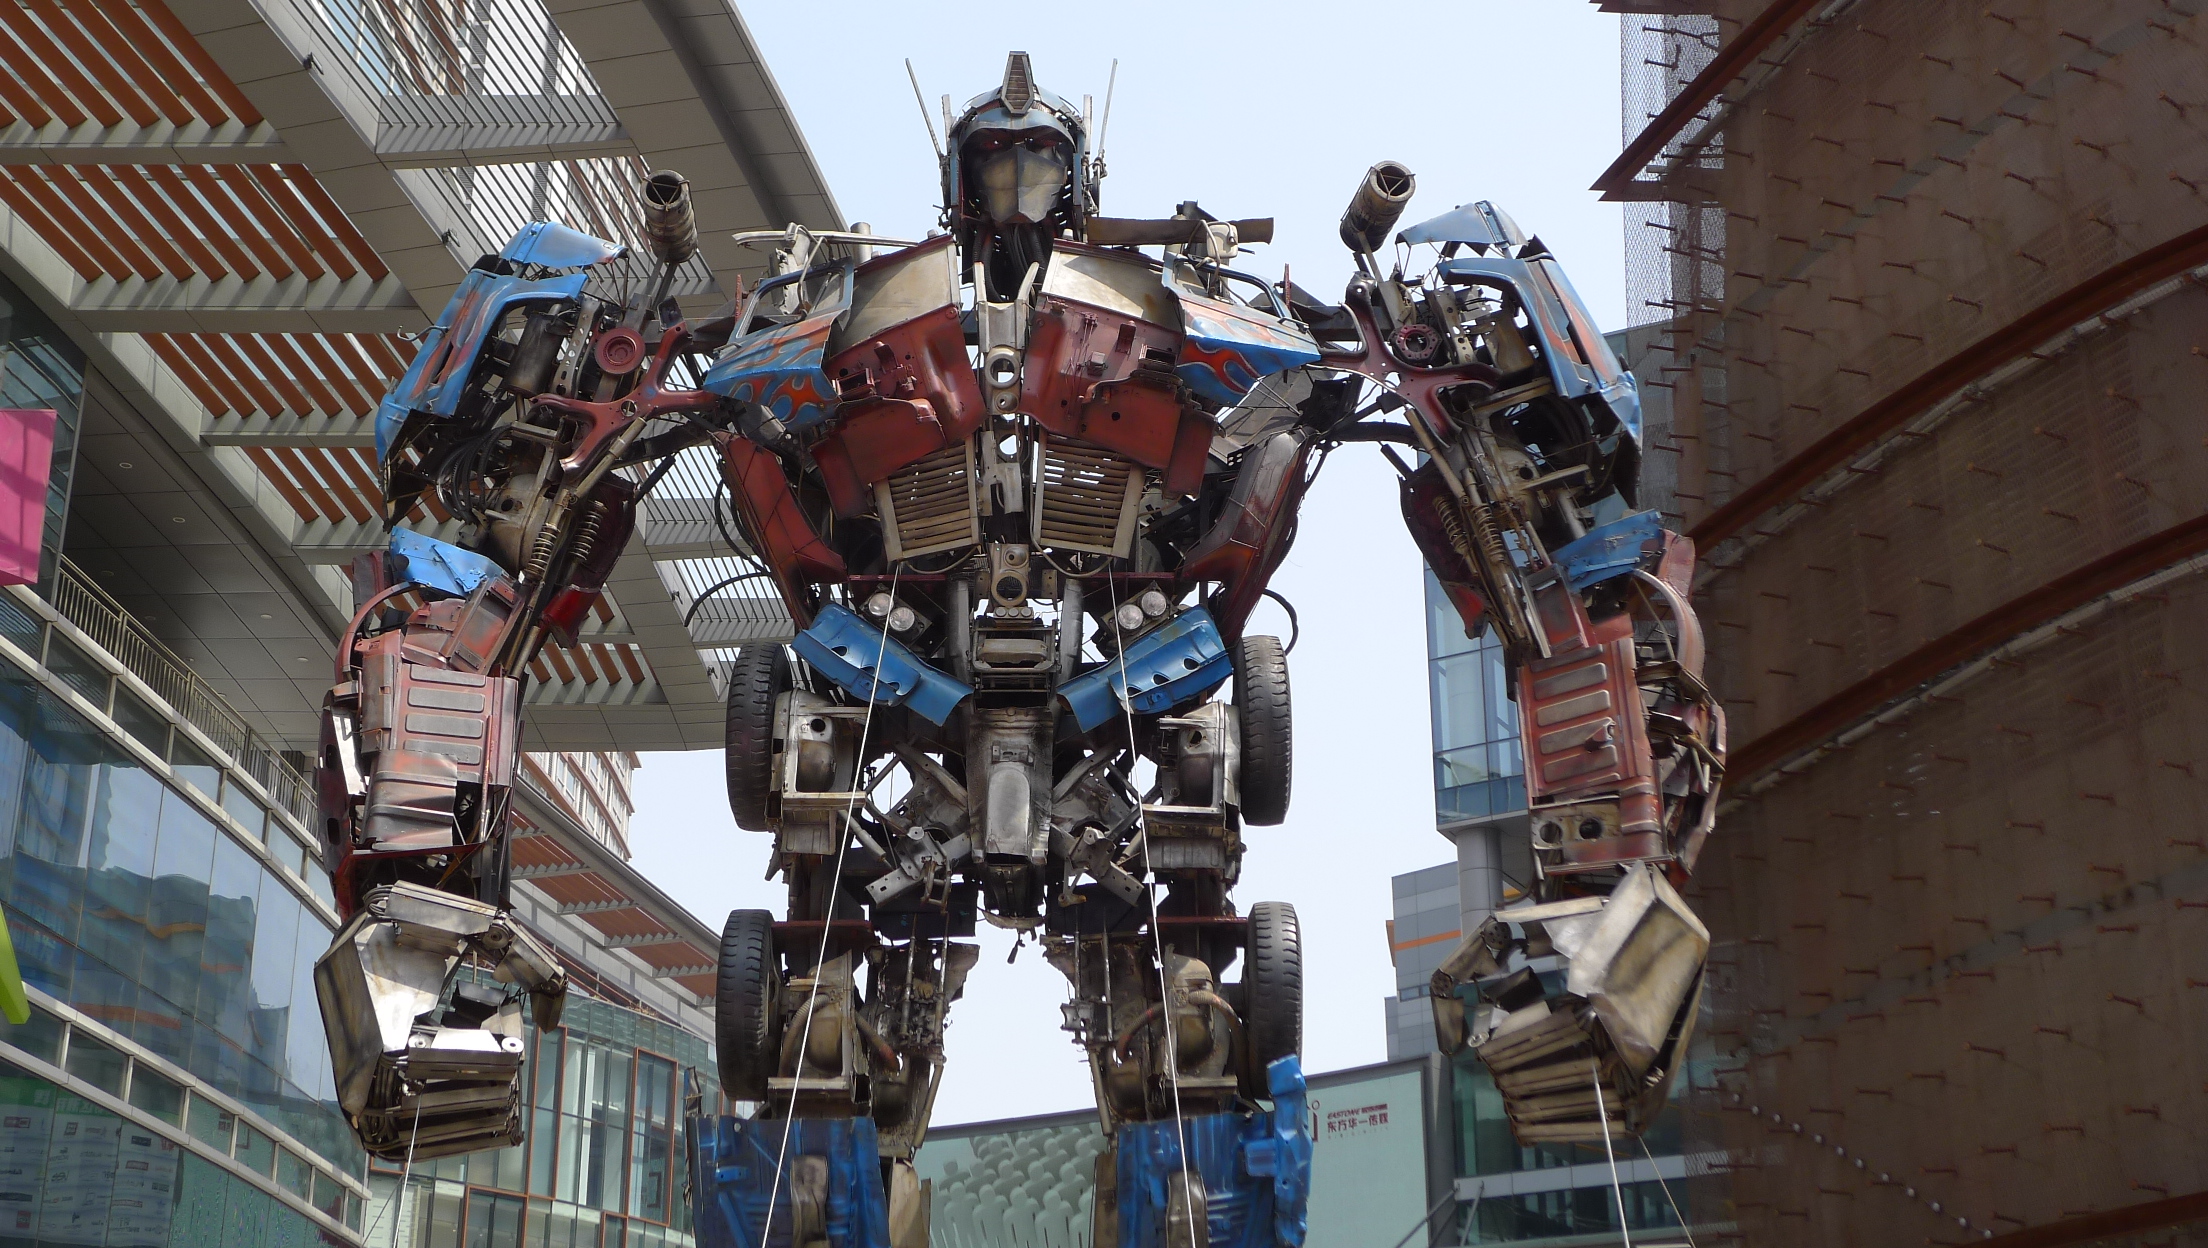 Un préquel animé Transformers serait en chantier, par le réalisateur de Toy Story 4